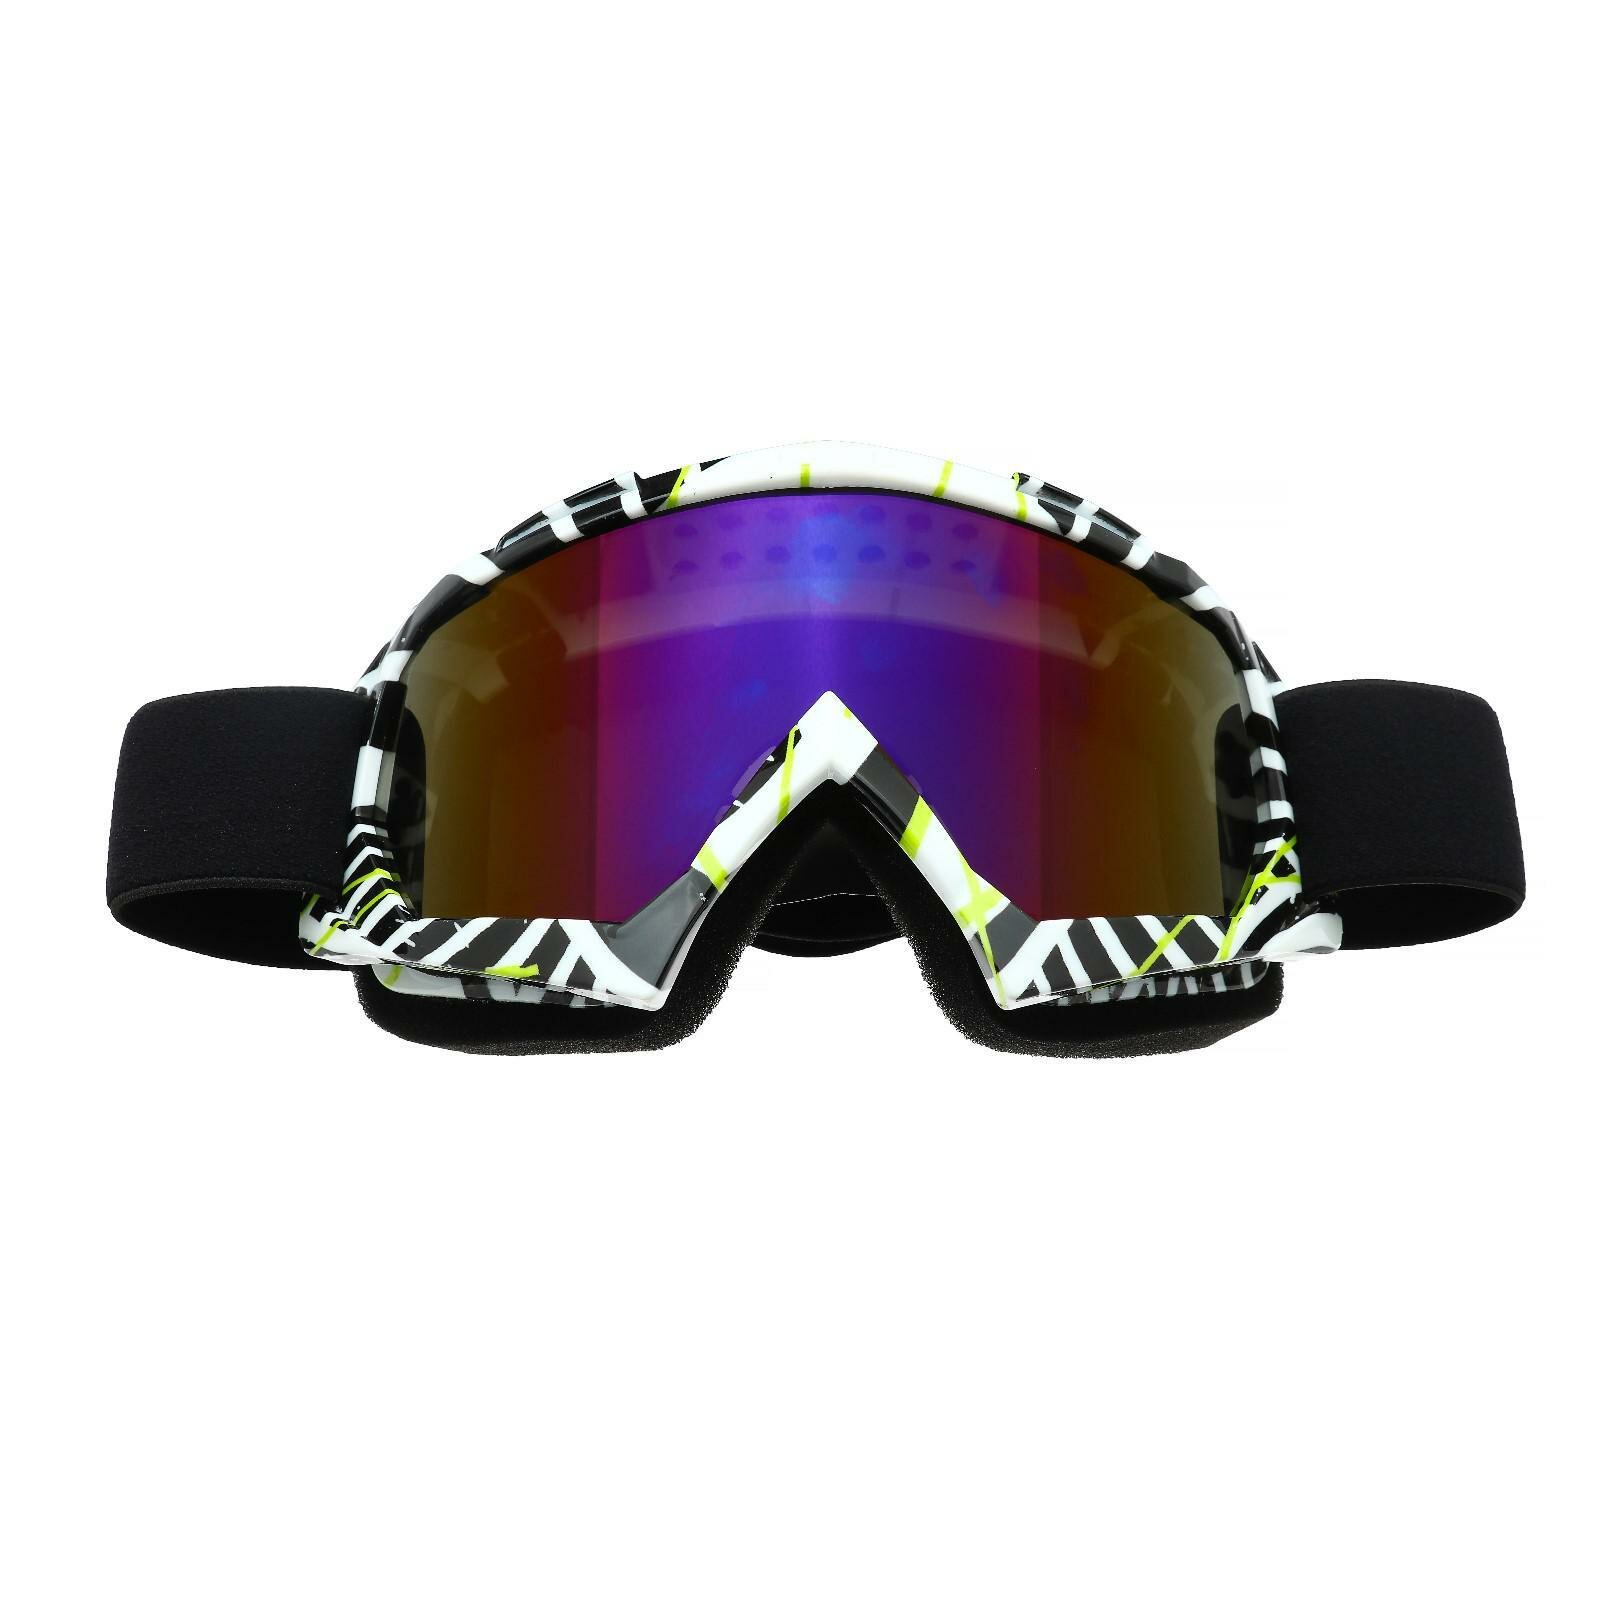 Очки-маска для езды на мототехнике стекло сине-фиолетовый хамелеон бело-черные ОМ-19 (1шт.)